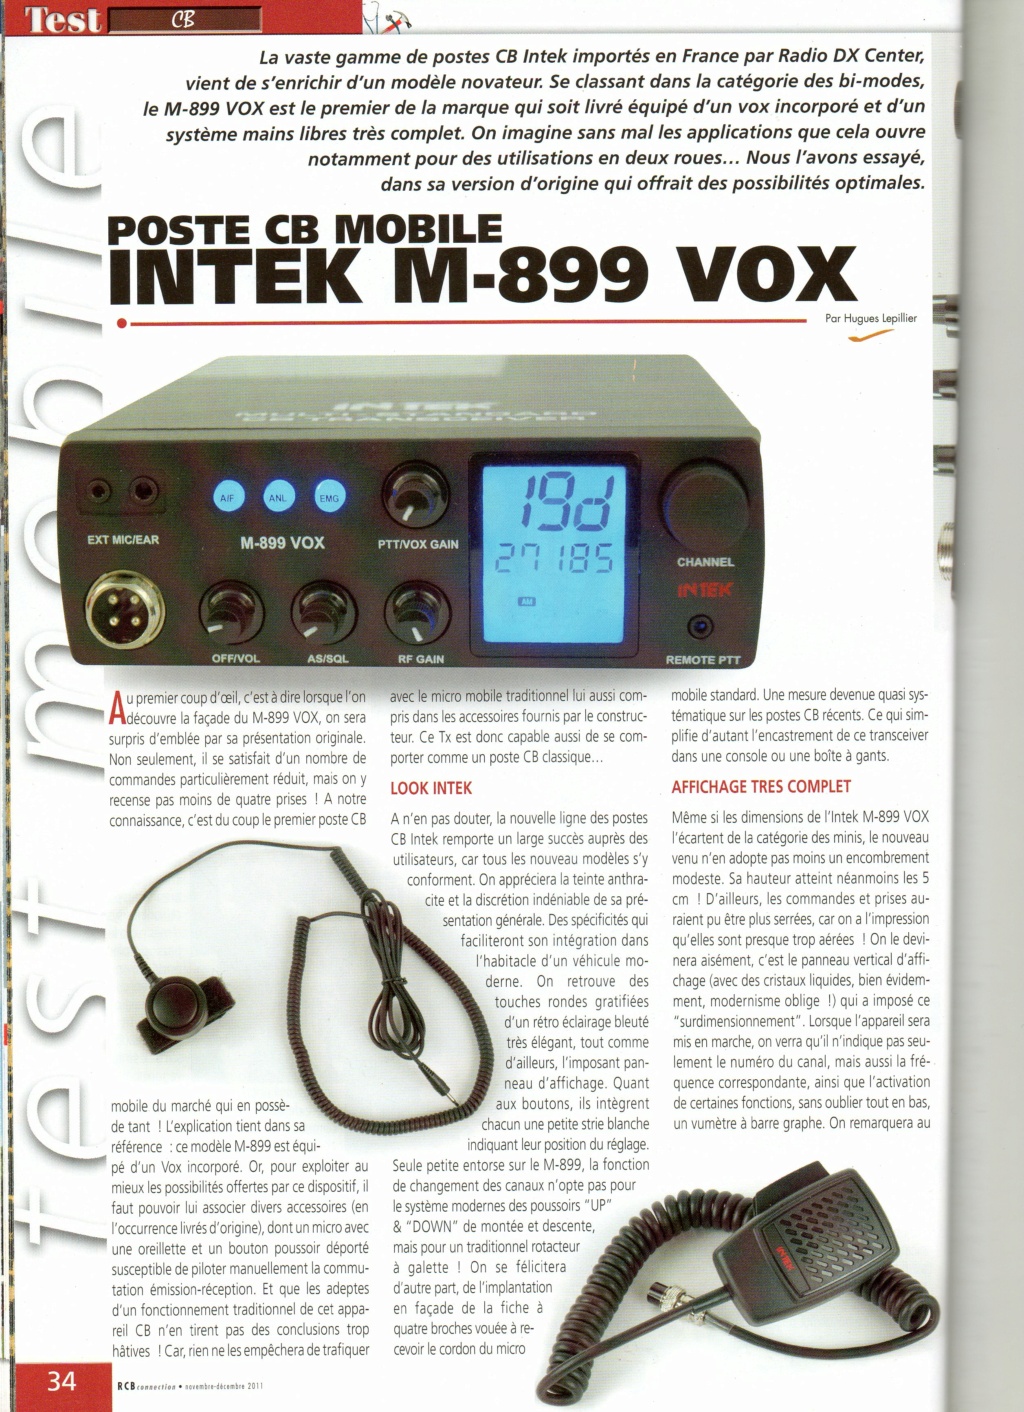 Intek M-899 Vox (Mobile) Img49811